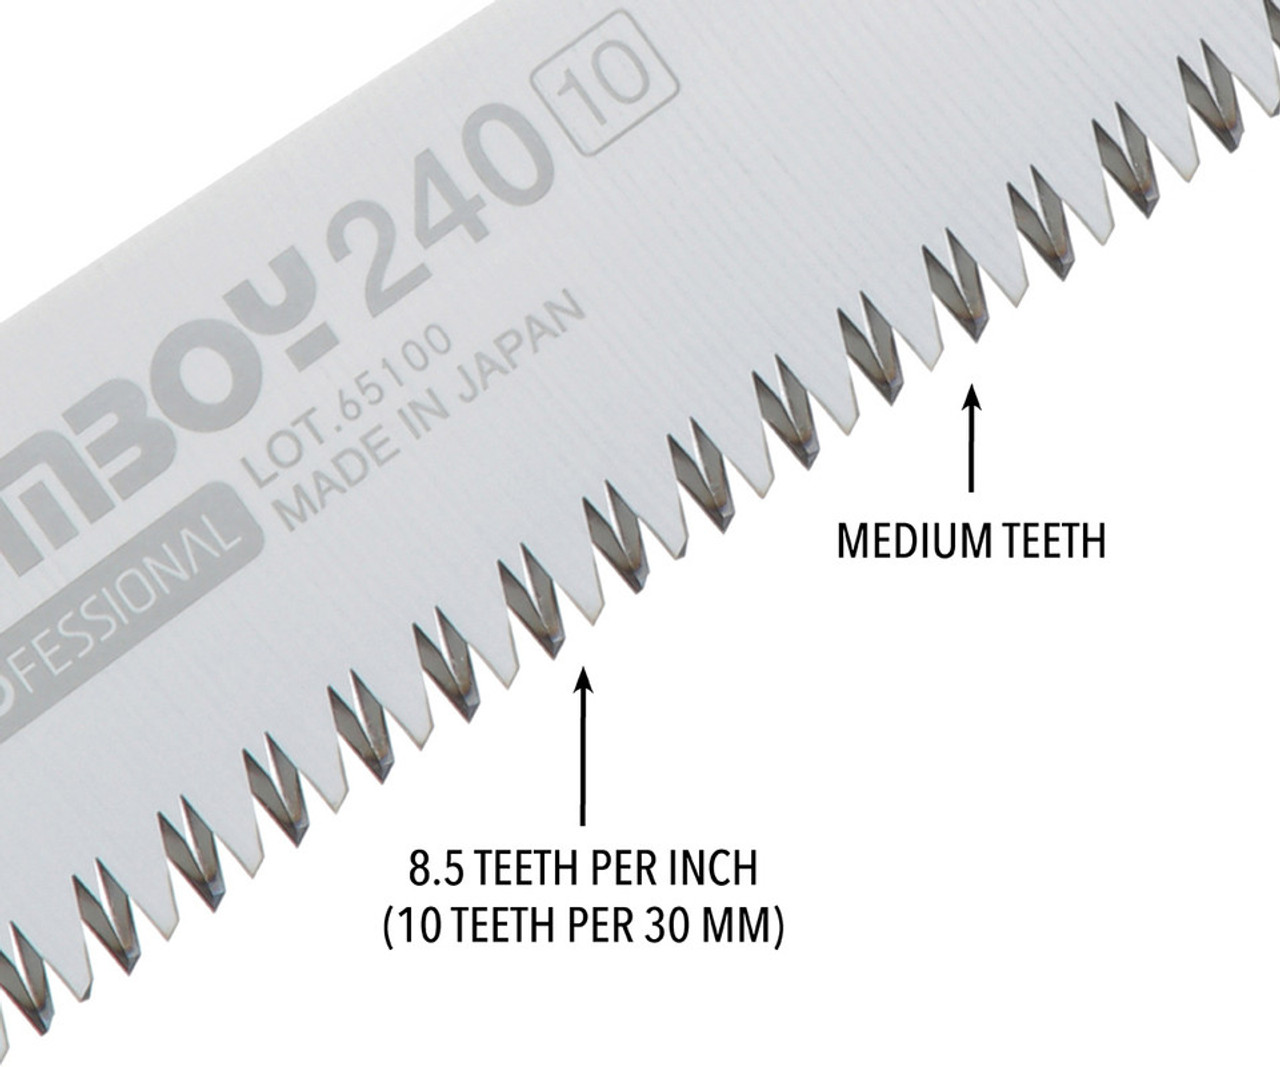 Silky Professional GOMBOY 240mm Medium Teeth Folding Saw